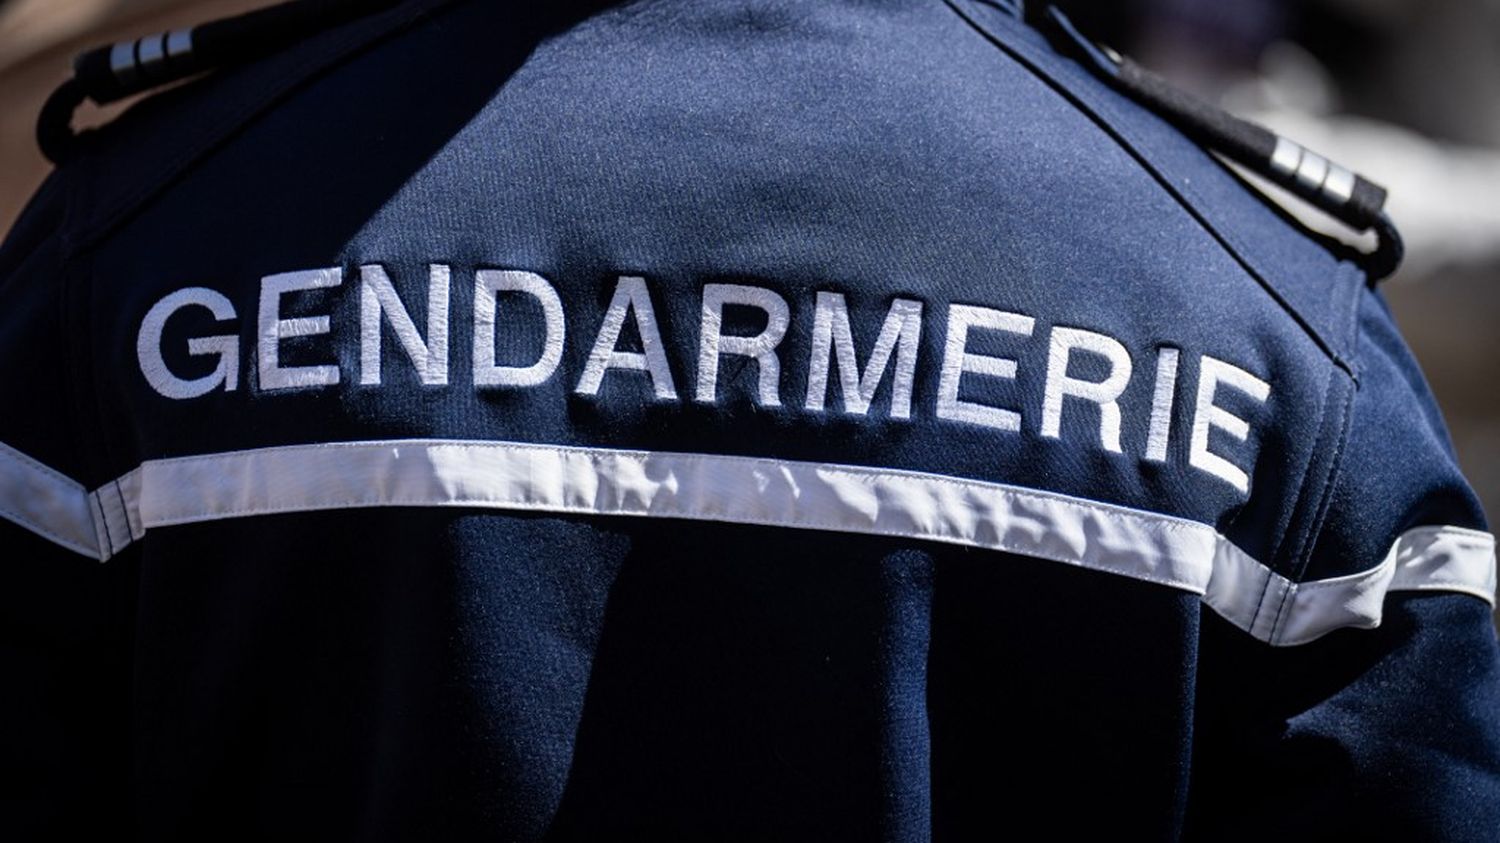 Alerte enlèvement en Seine-Maritime : le beau-père de Célya, 6 ans, interpellé et placé en garde à vue après la découverte du corps de l'enfant, annonce la gendarmerie